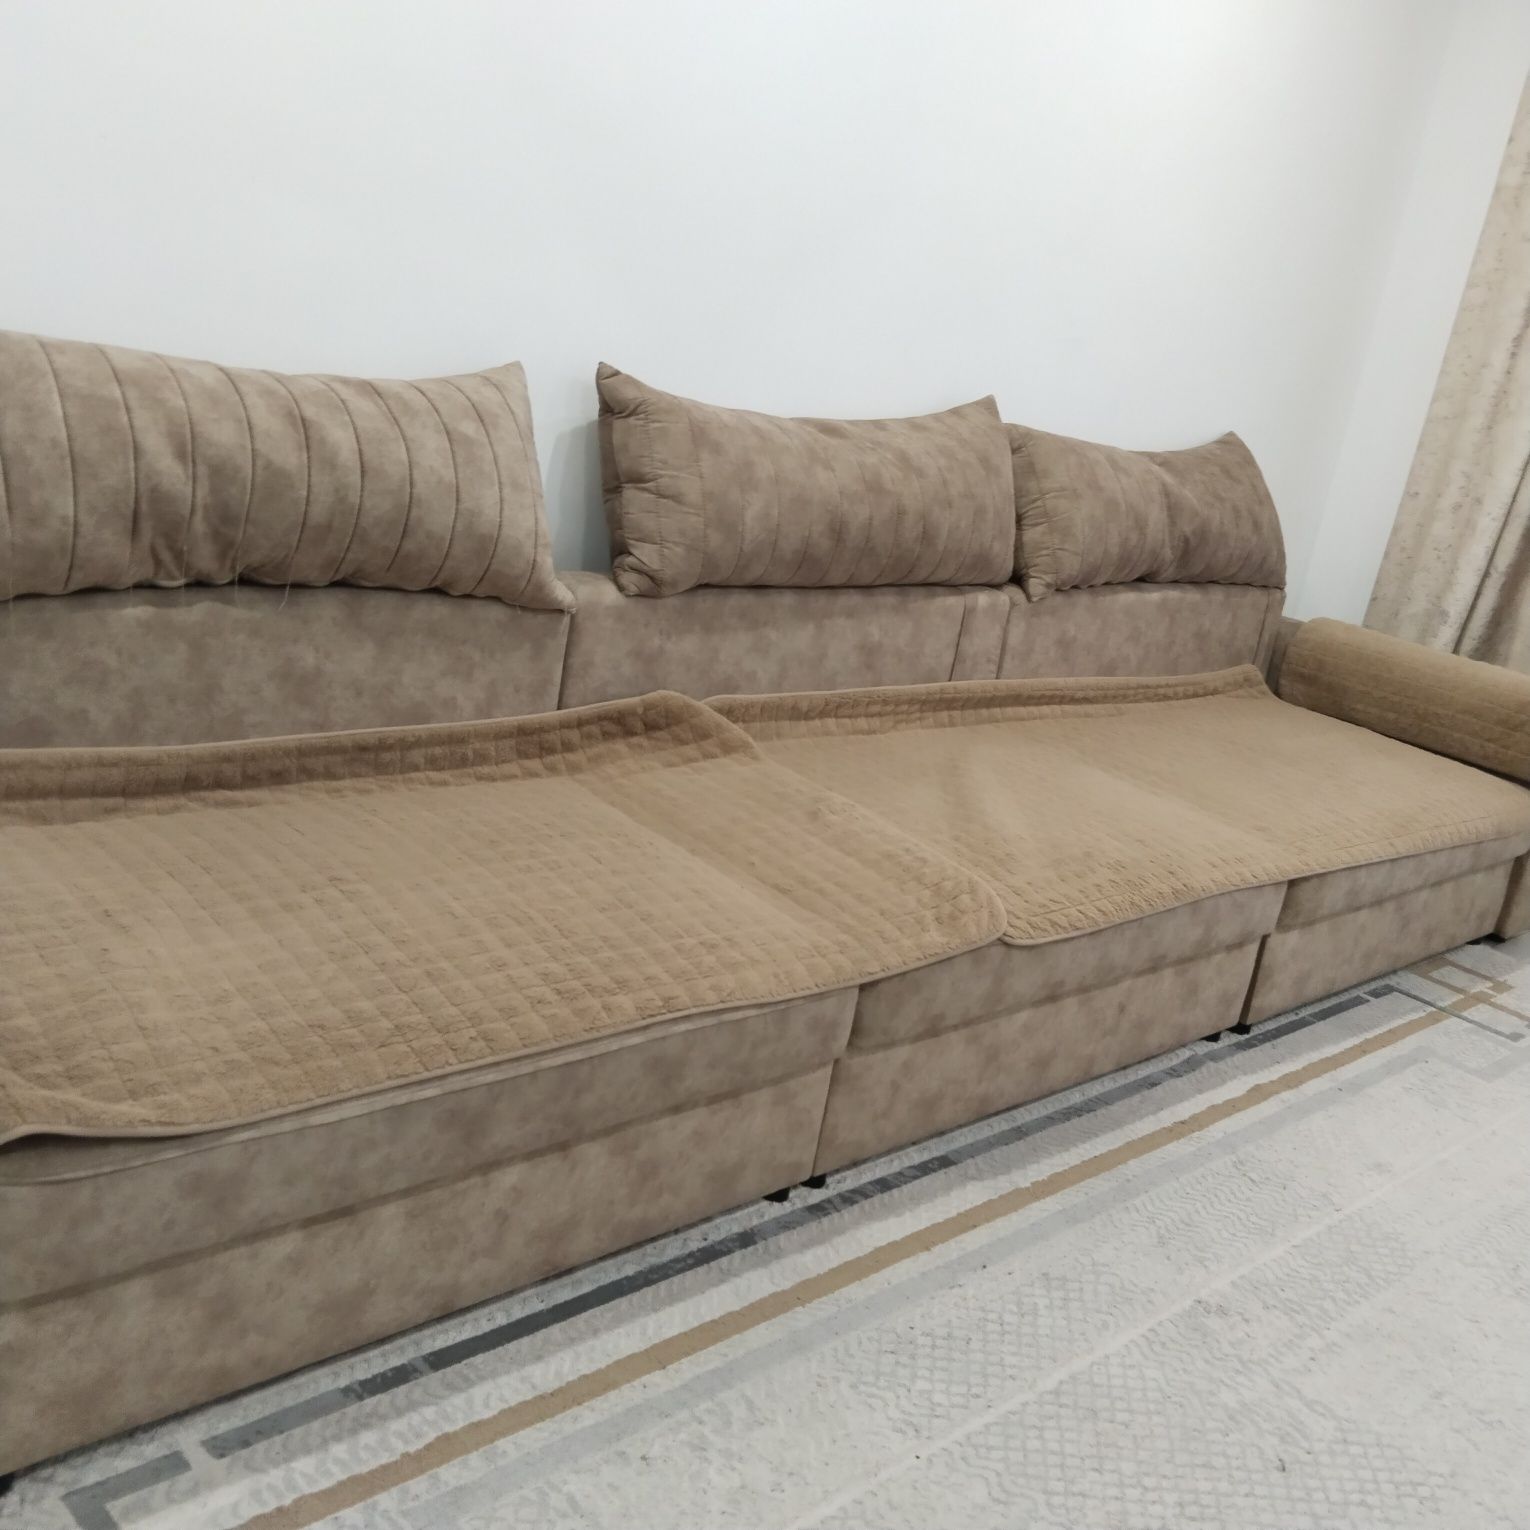 Продам диван тик так раскладной,3 нищи для белья,(разбирается легко)